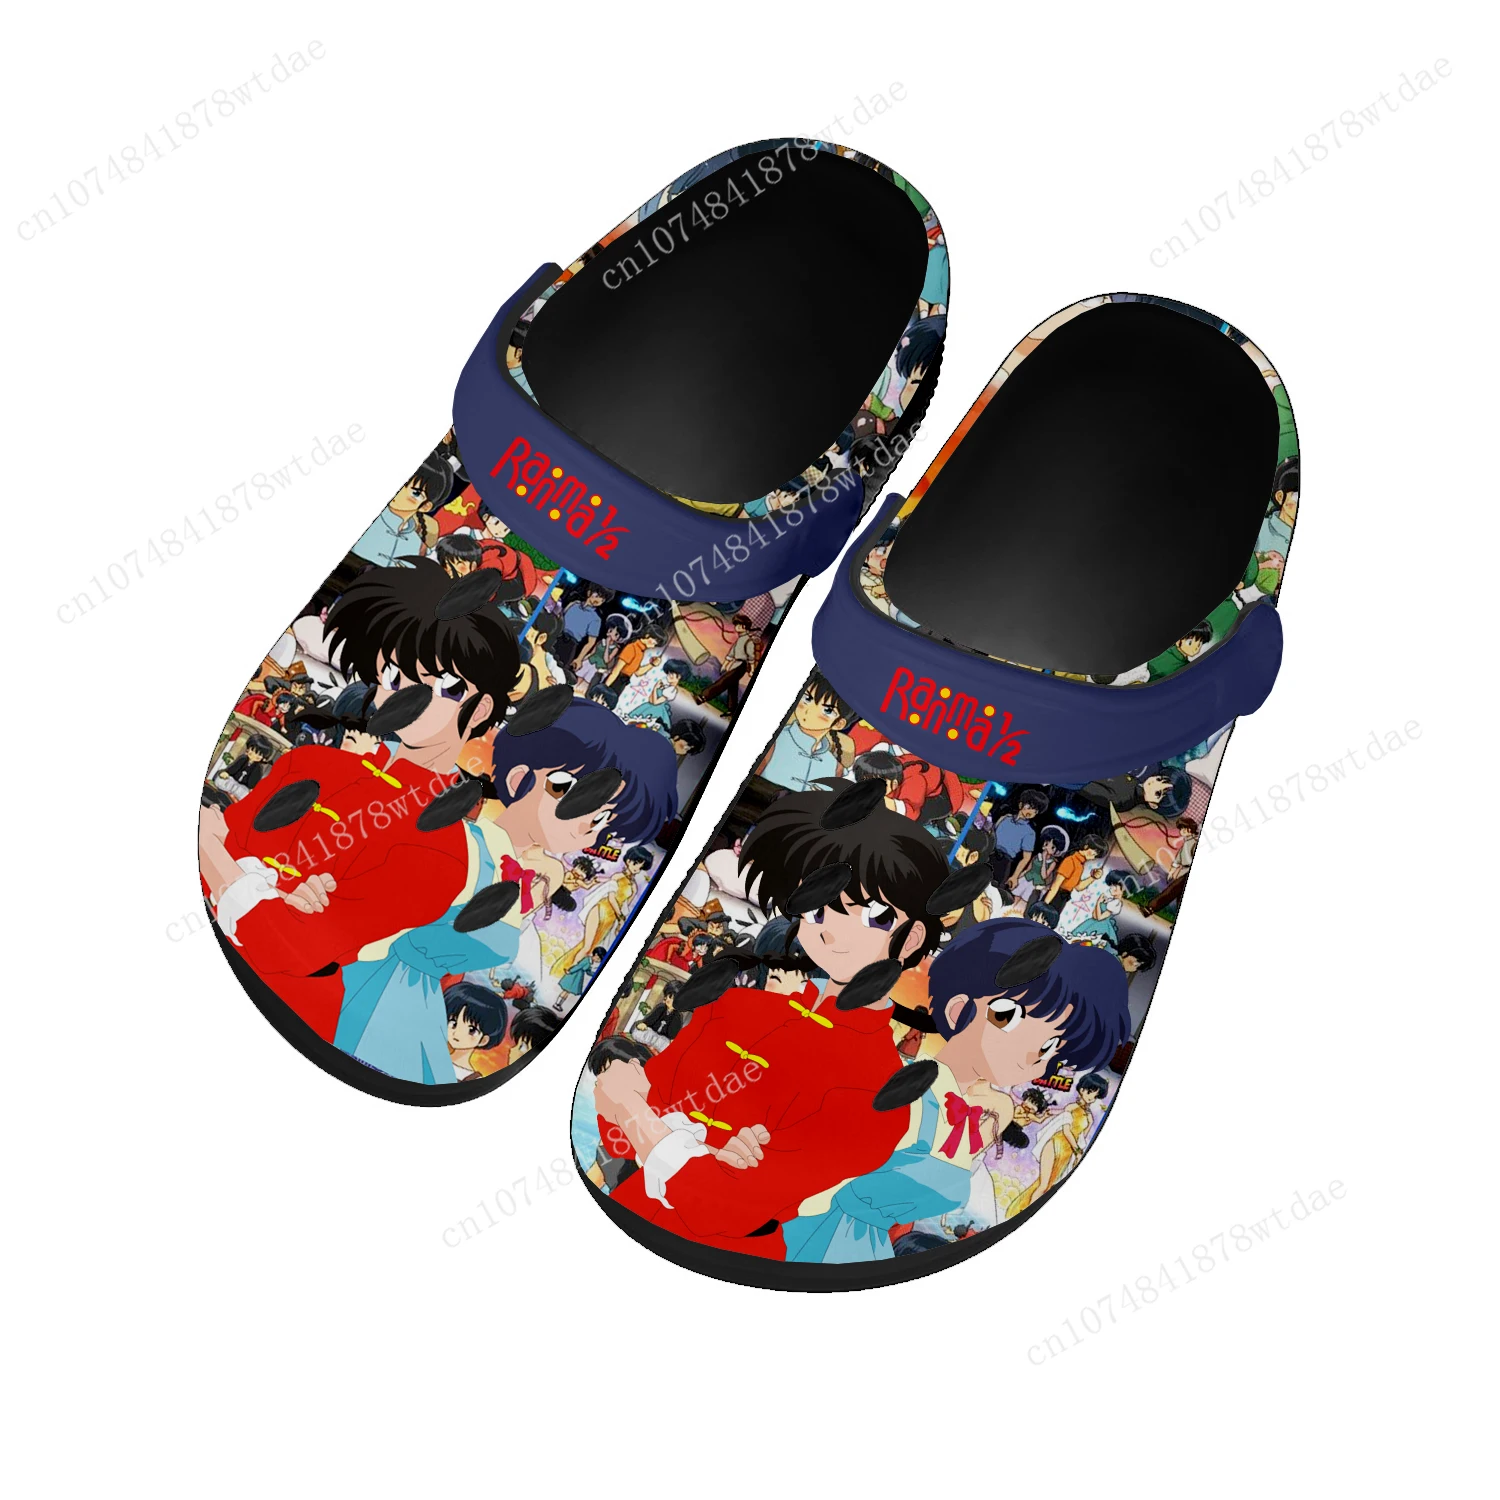 

Сабо Ranma 1/2 для дома, мужские и женские, подростковые, Tendo Akane, изготовленные на заказ, обувь для воды, комиксы, манга, сад, пляжные тапочки, сандалии